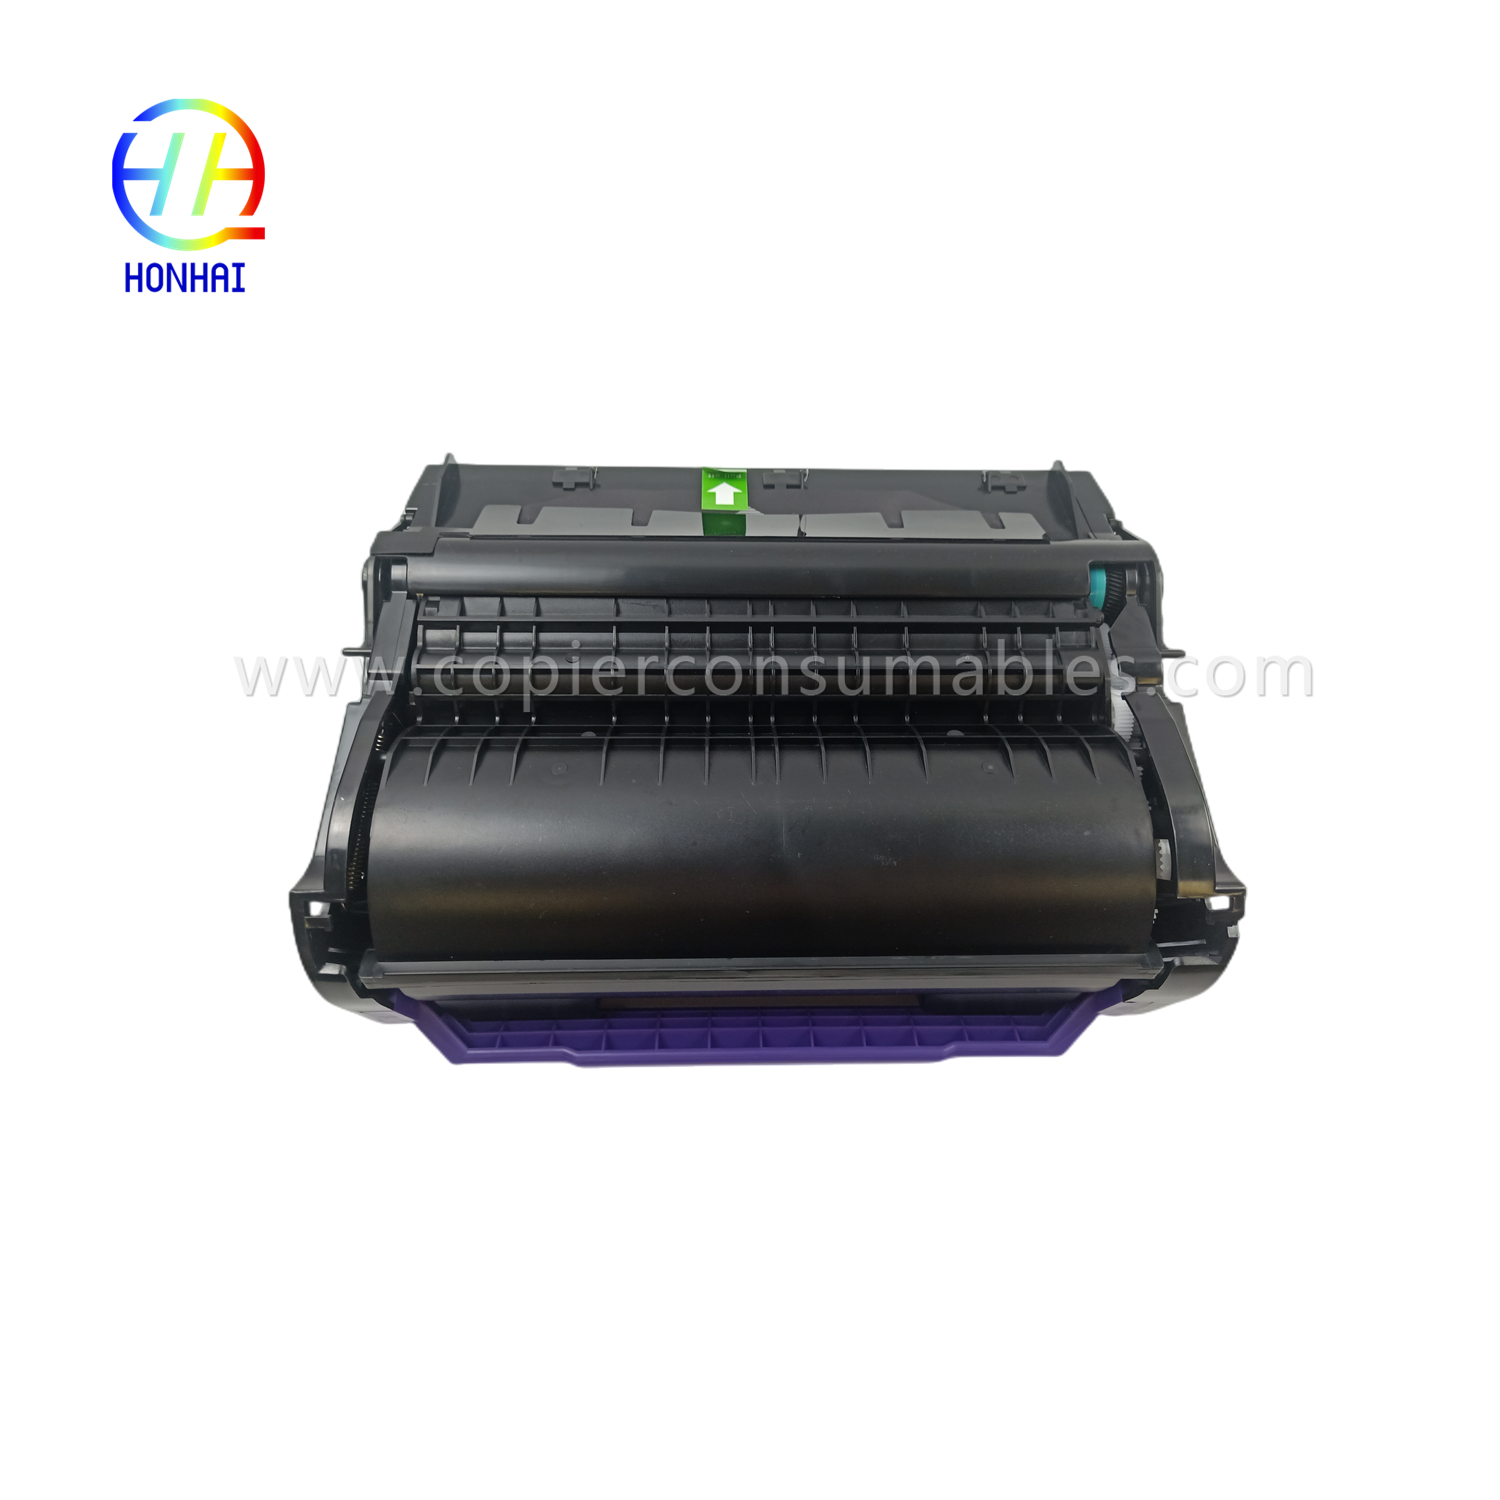 https://www.copierhonhaitech.com/toner-cartridge-black-for-ricoh-406683-sp-5200-5210-product/